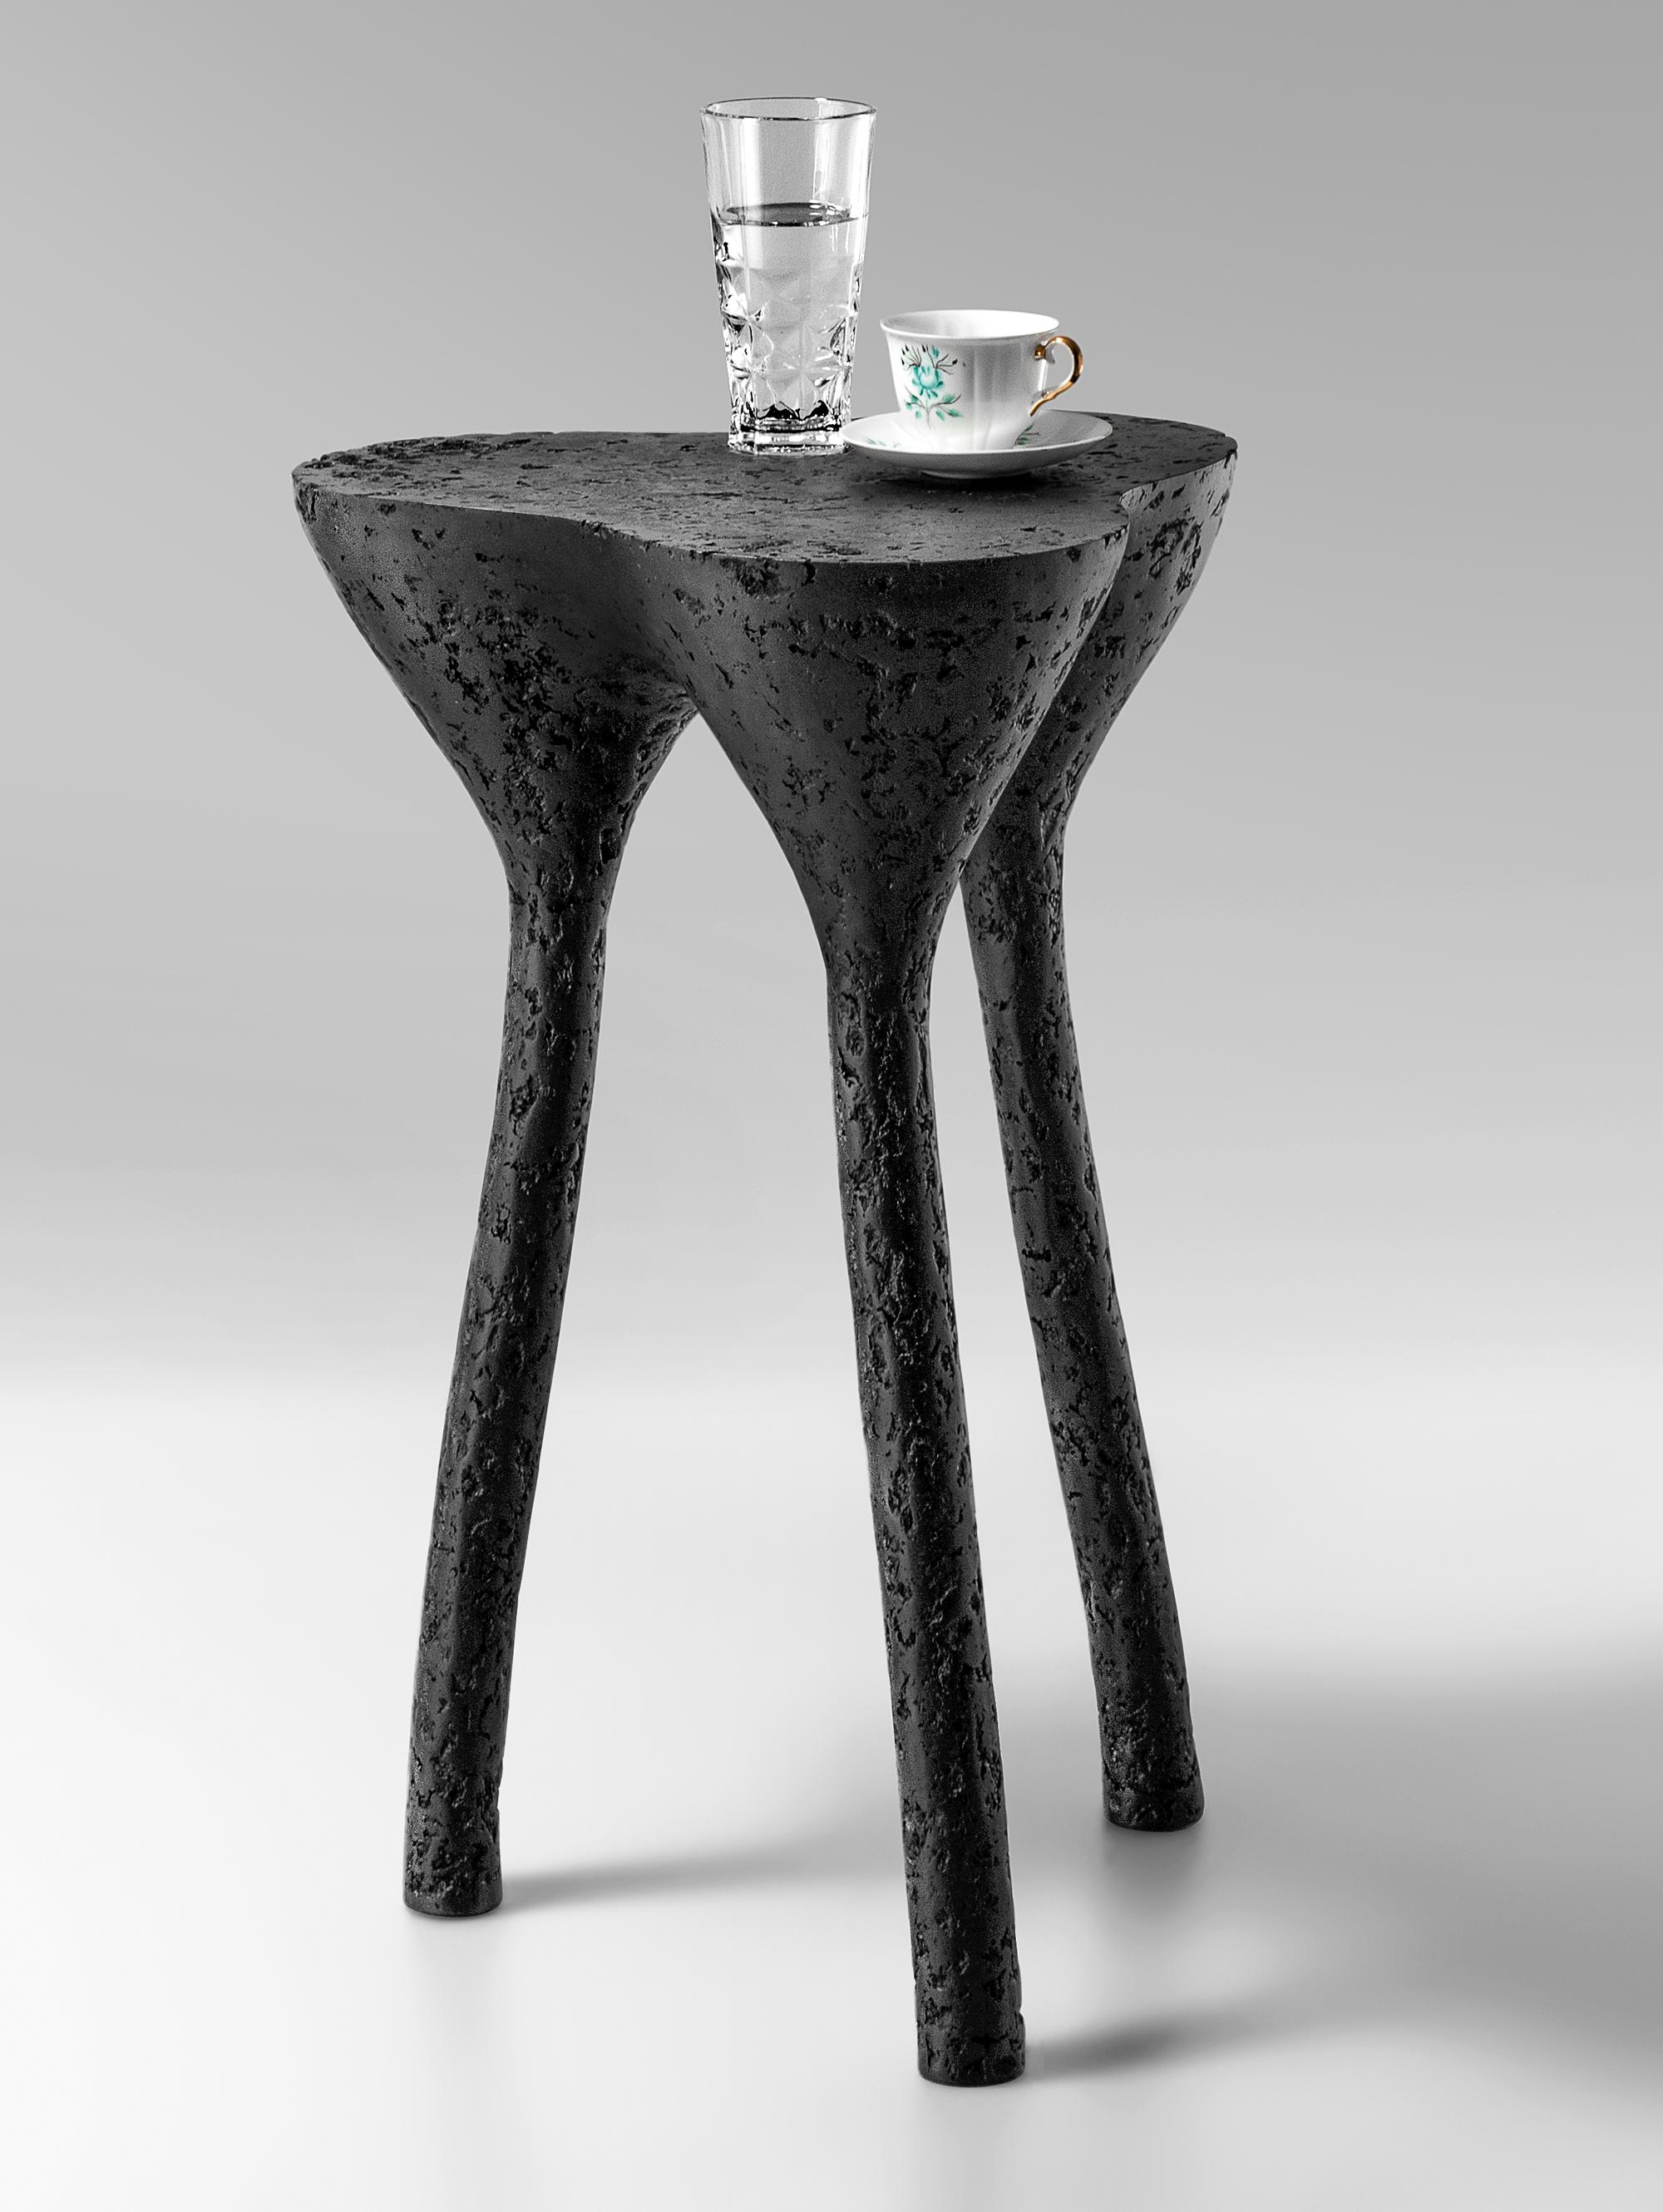 Table d'appoint tripode noire par Kasanai
Dimensions : D 38 x H 65 cm.
MATERIAL : Ciment, bois, papier recyclé, colle, peinture.
6 kg.

La fusion de la robustesse et de l'élégance, ainsi que le mélange de l'archaïsme et de la modernité. Plus qu'une